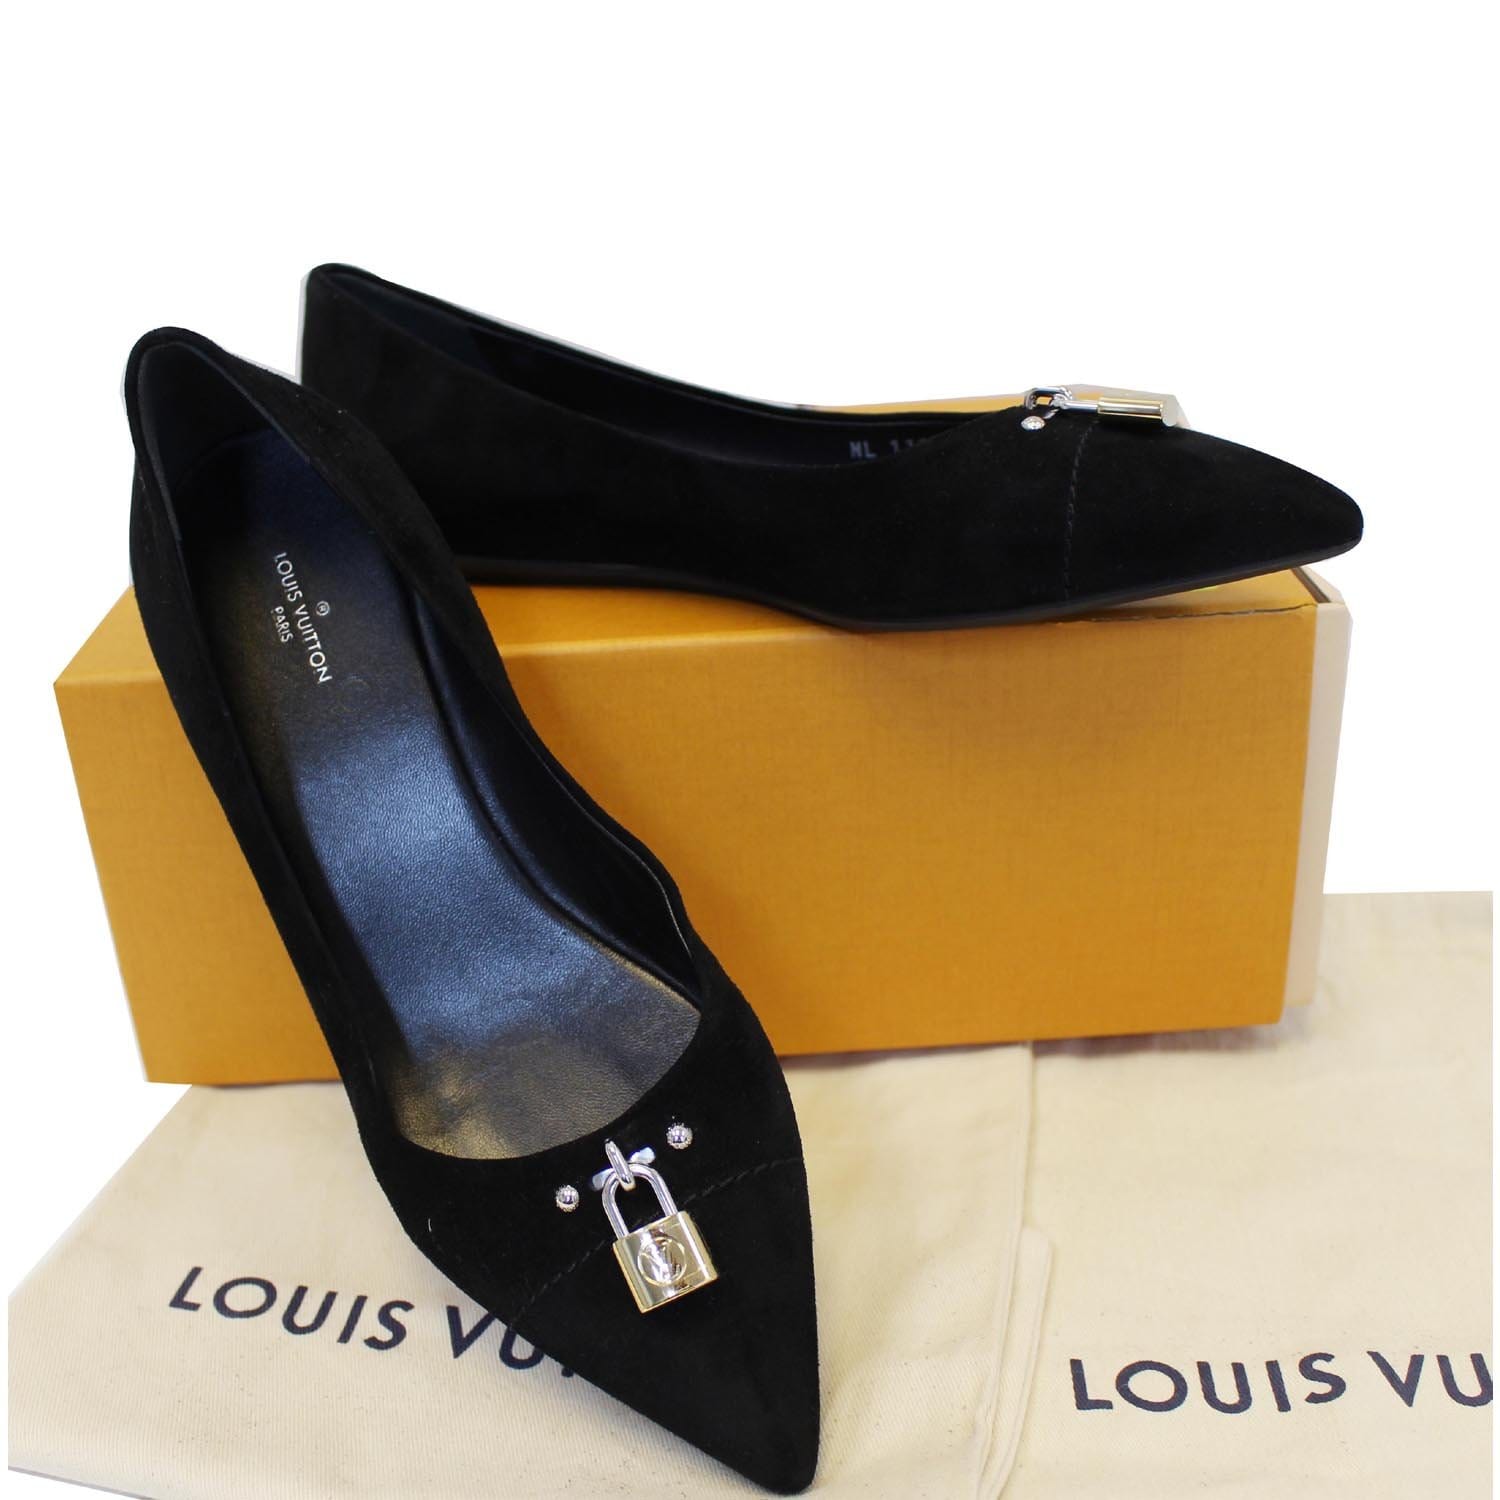 Louis Vuitton Women's Flats for sale